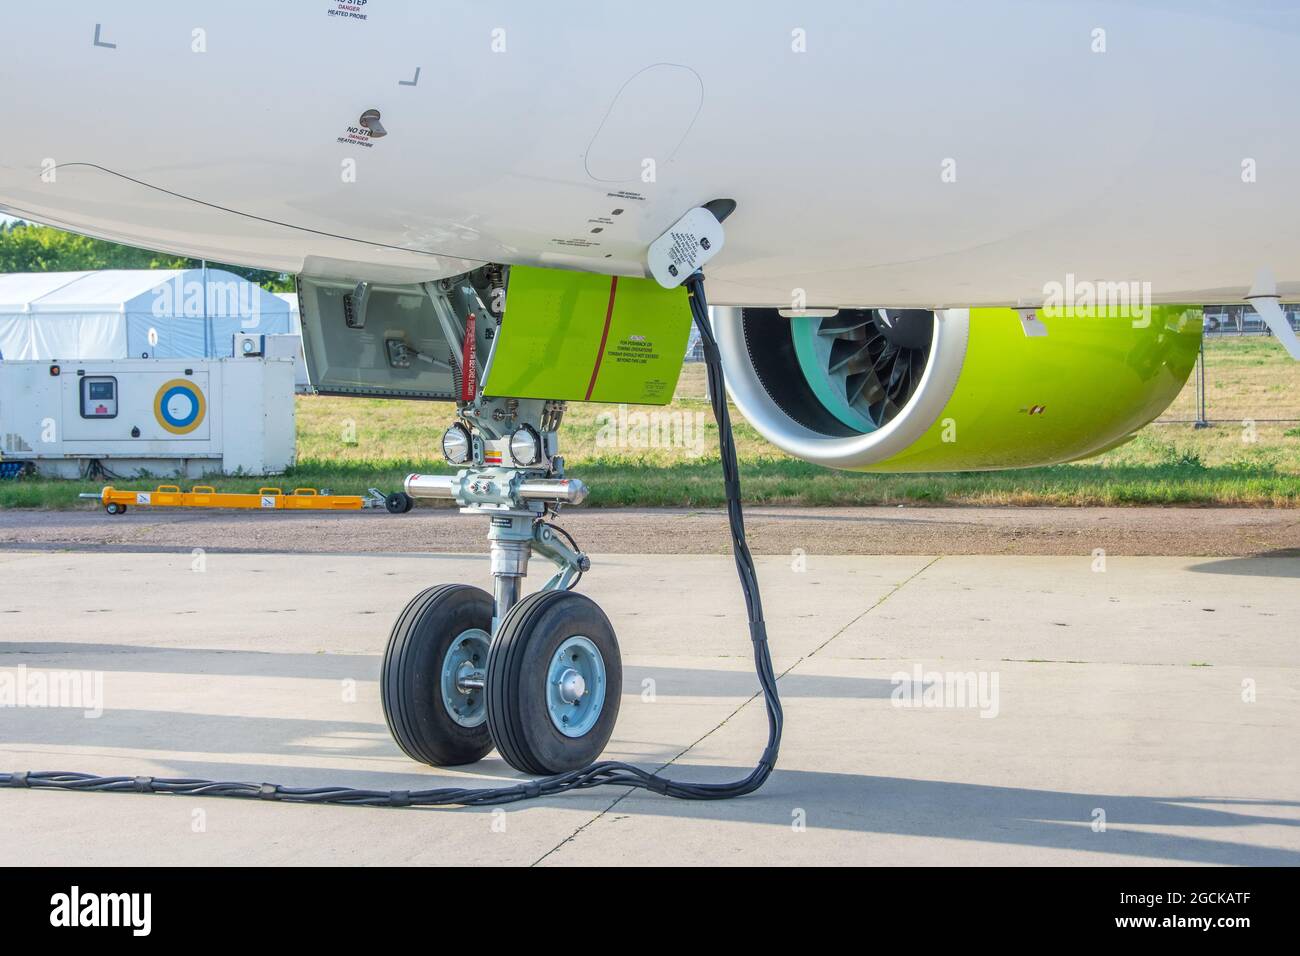 Bodenstromaggregat-GPU liefert Strom an geparkte Flugzeuge Stockfotografie  - Alamy